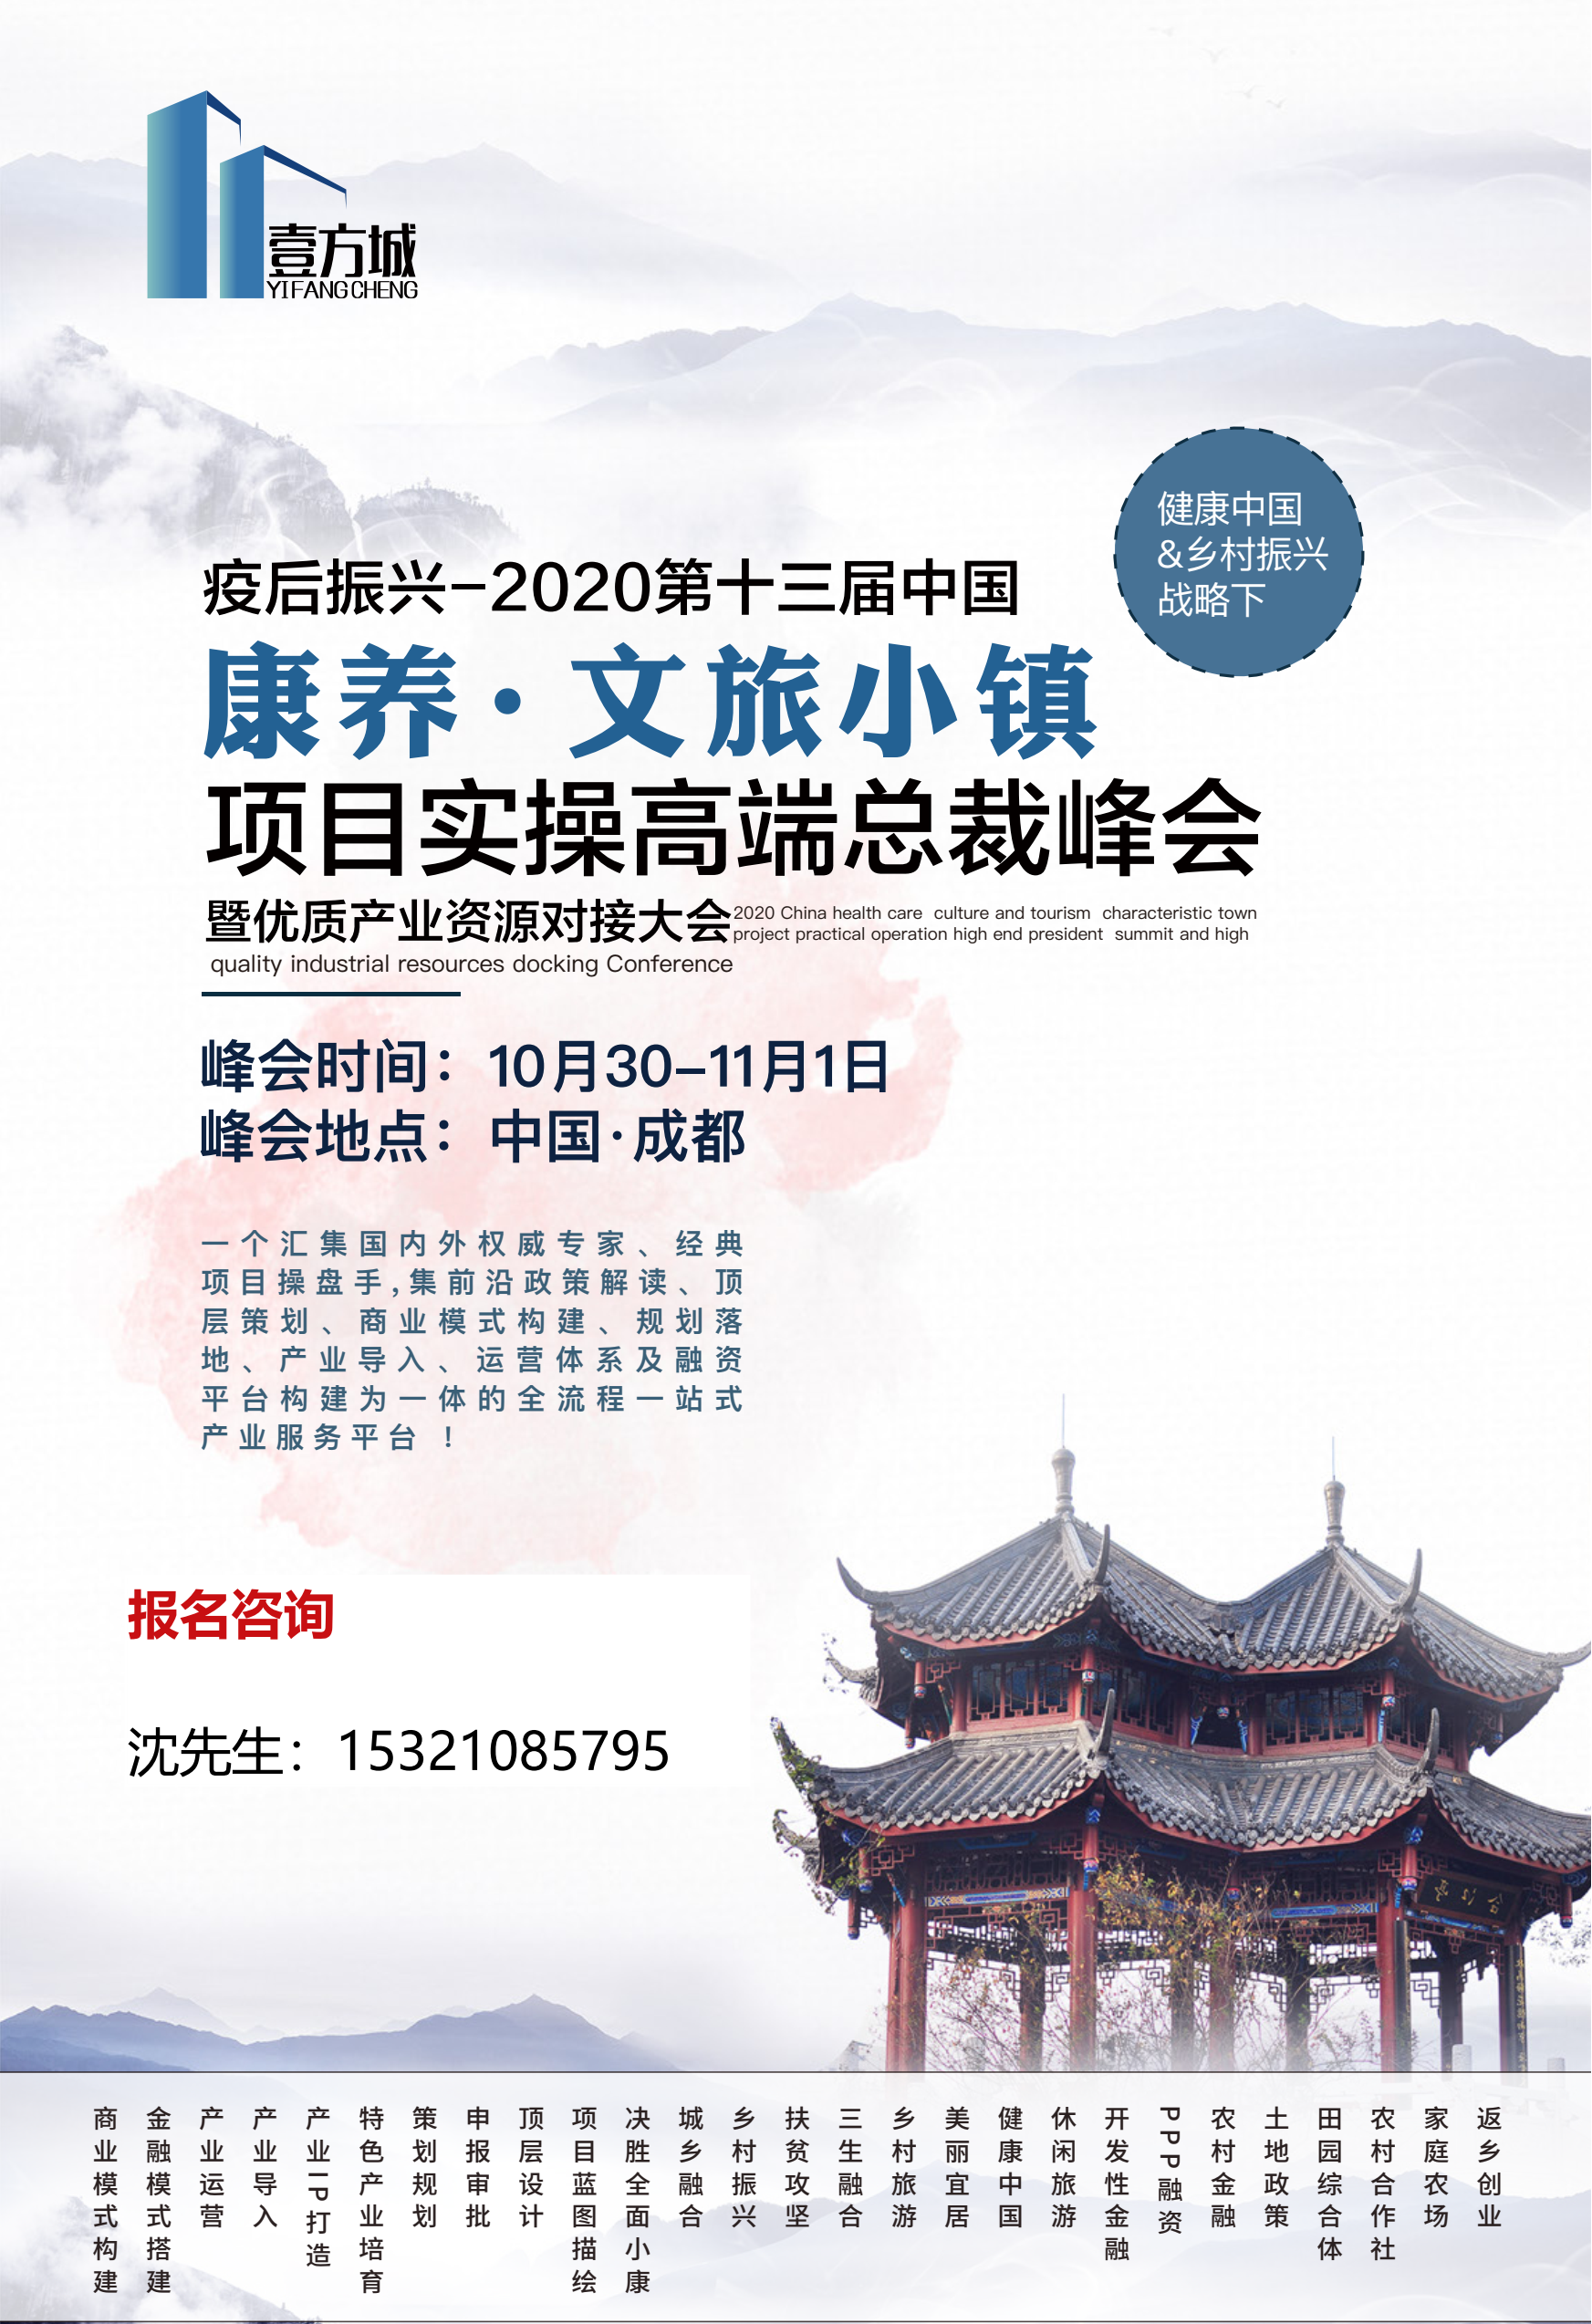 疫后振兴-2020第十三届中国康养.文旅小镇项目实操高端总裁峰会